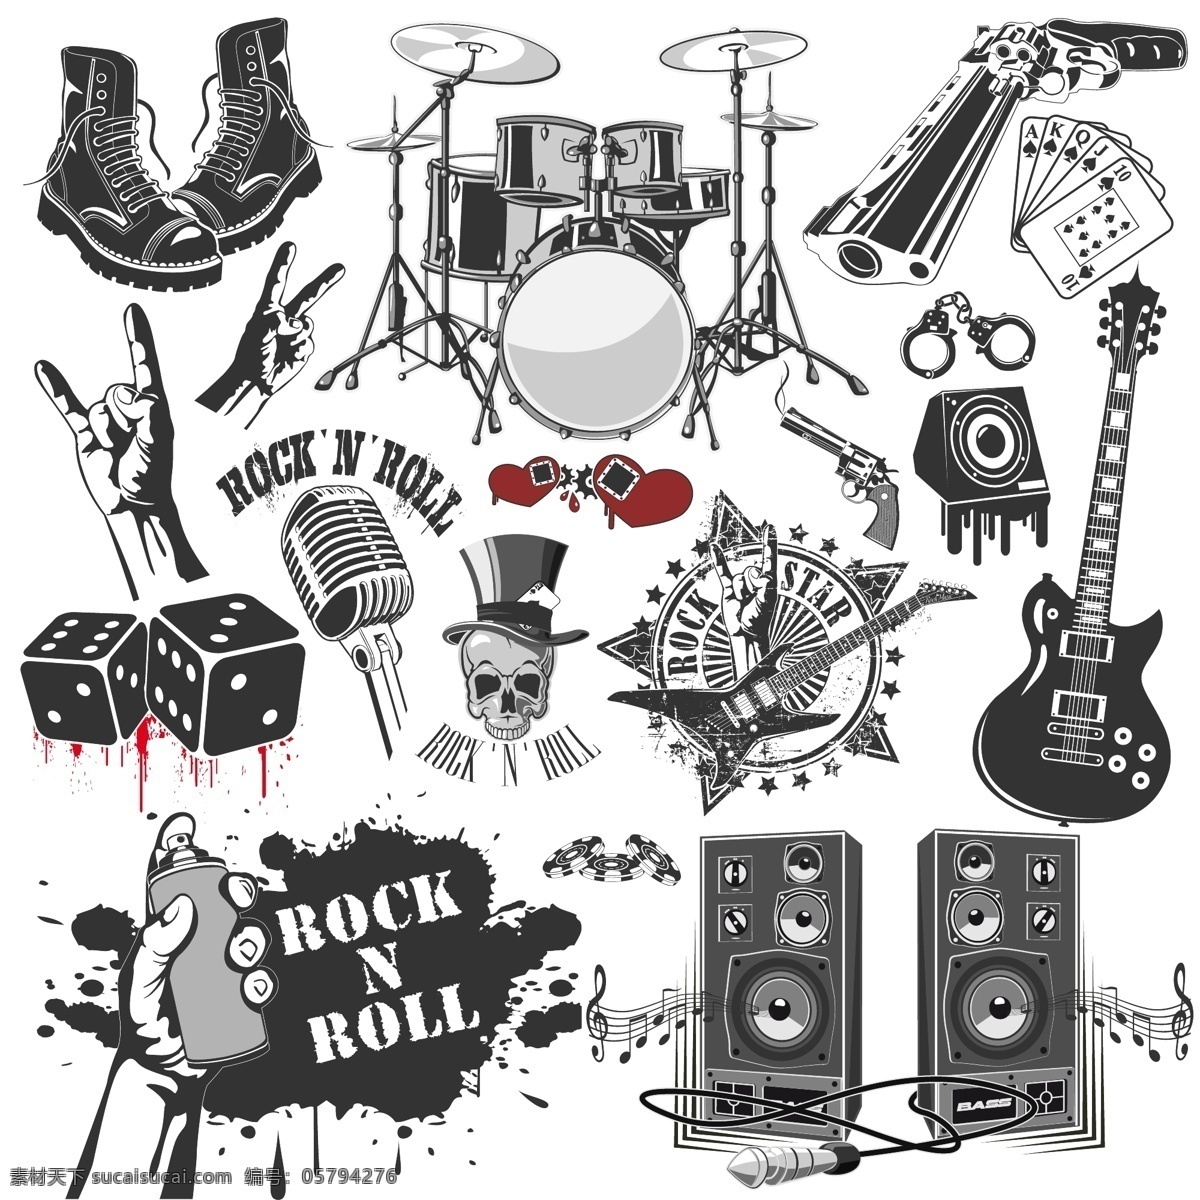 摇滚 摇滚乐 摇滚乐队 骷髅图案 音响 乐器 电吉他 rock 音乐 摇滚海报 摇滚标志 舞蹈音乐 文化艺术